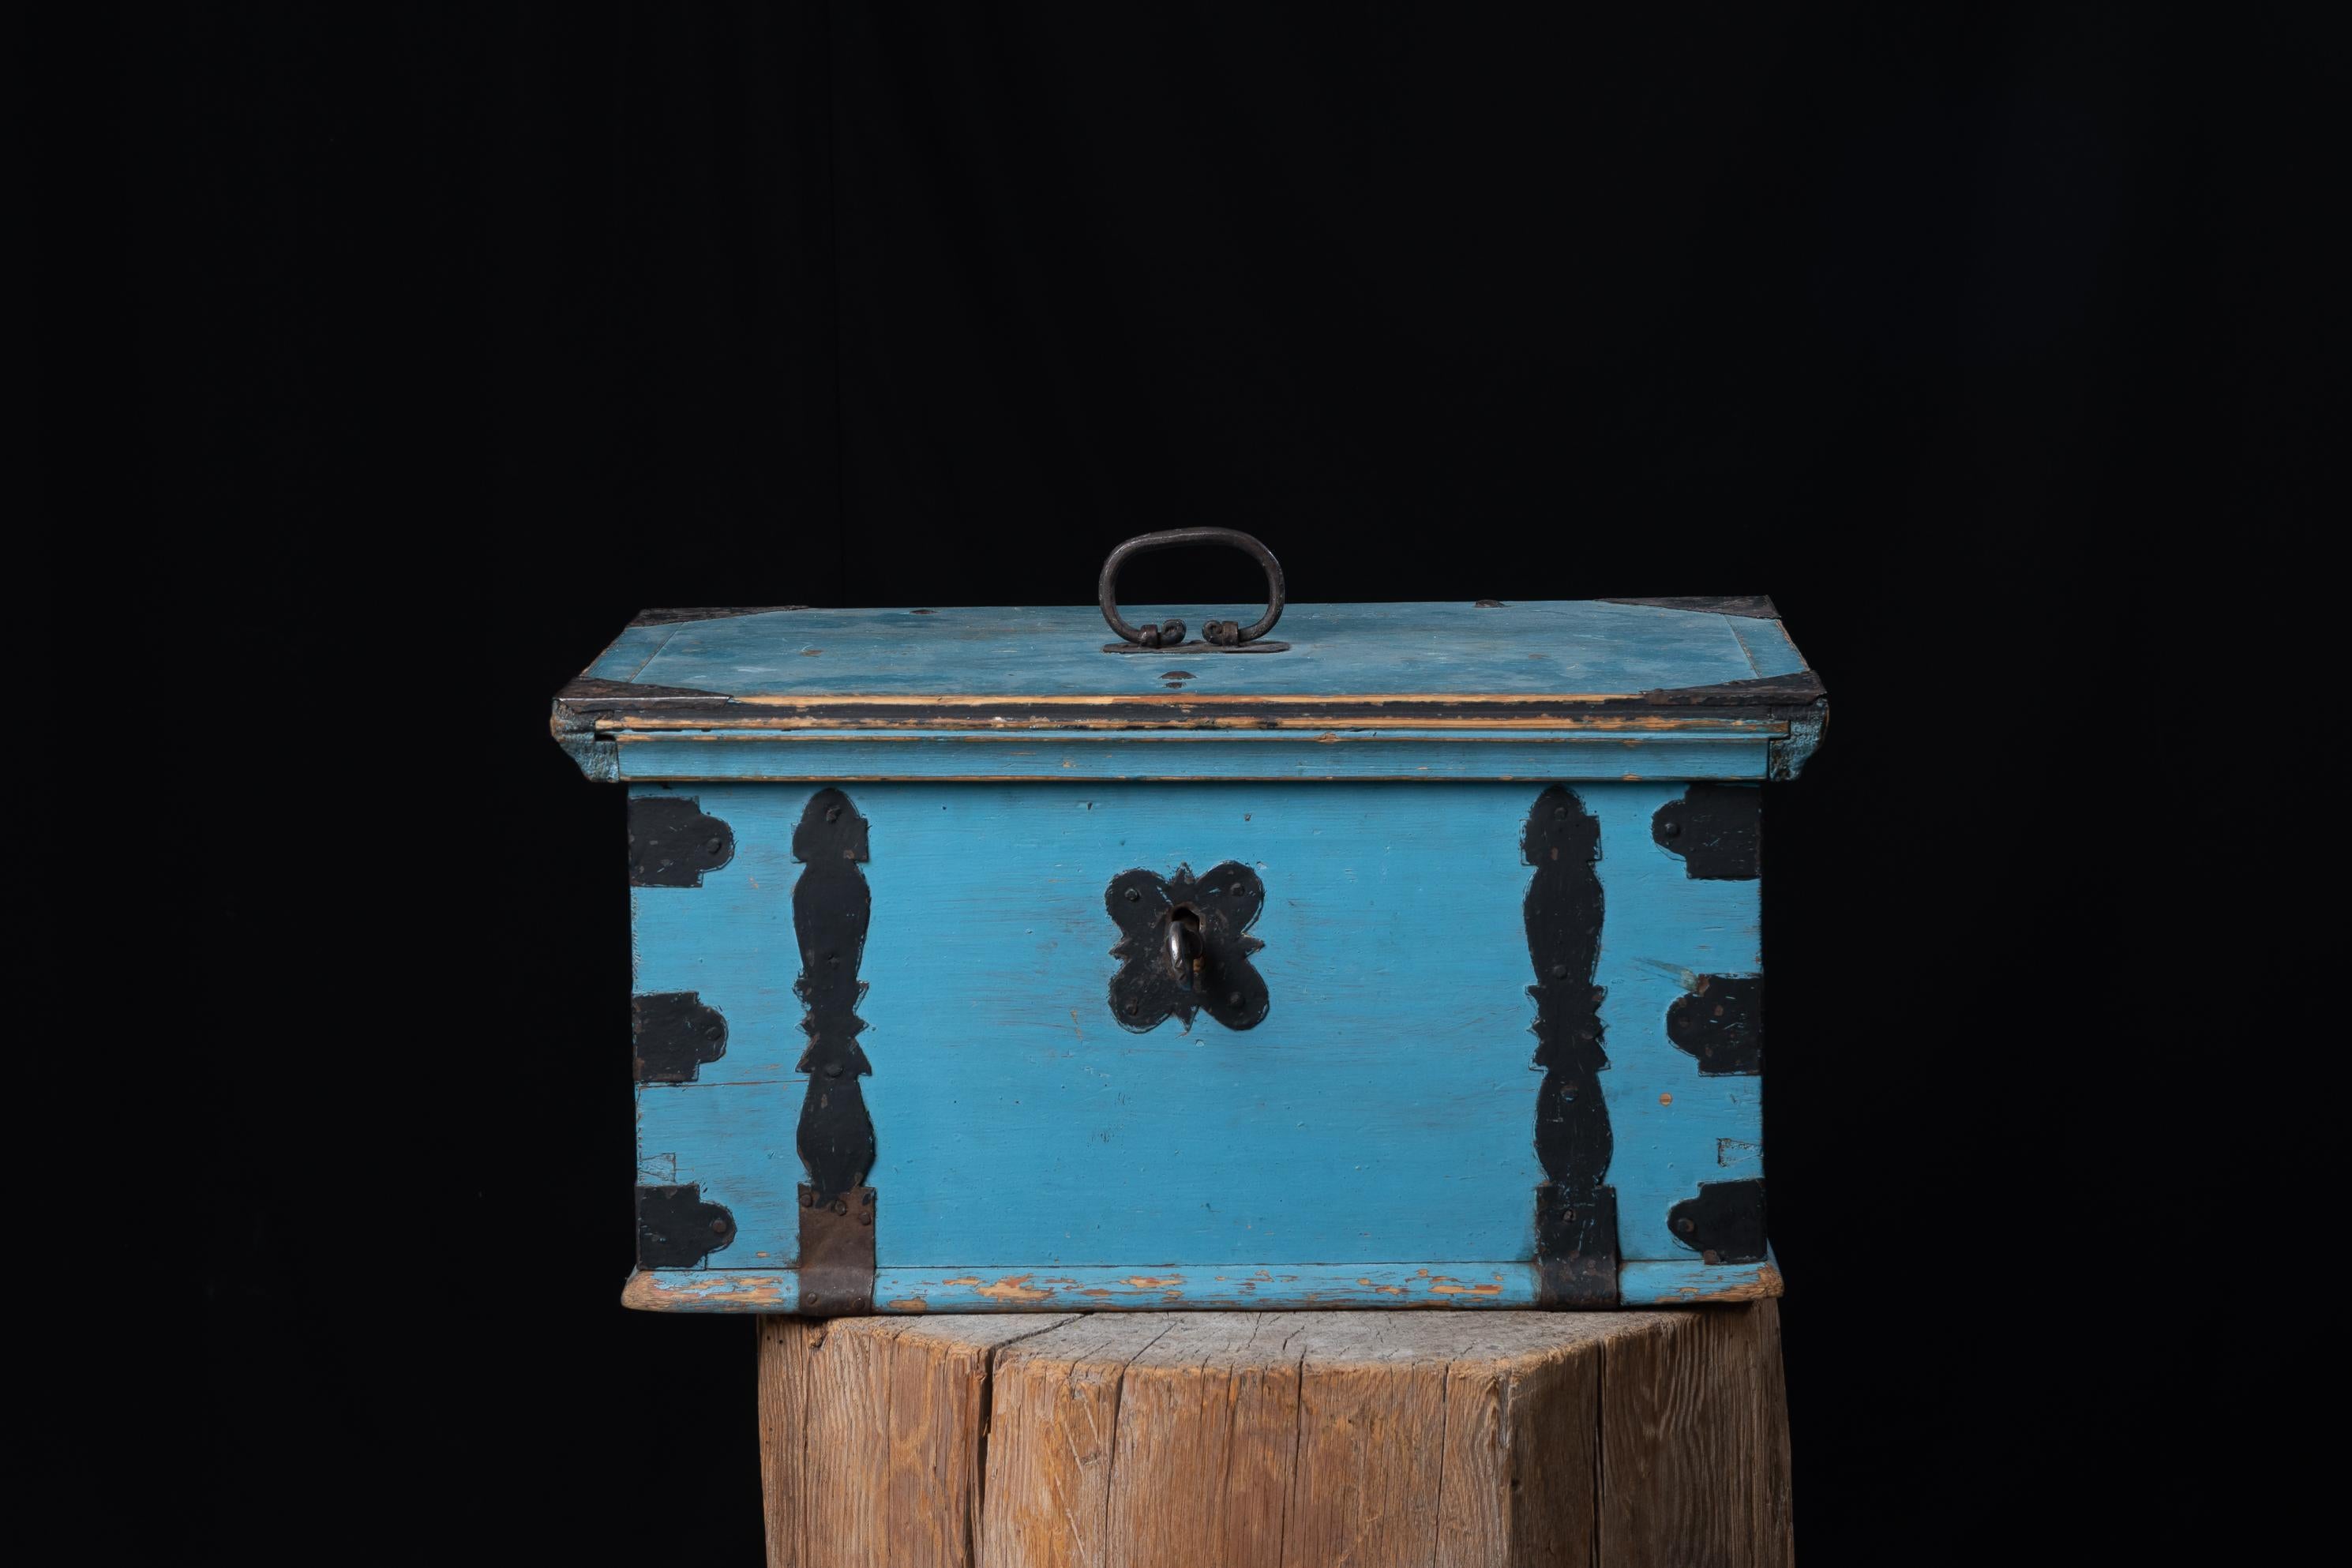 Blaue Volkskunsttruhe oder Kiste aus Schweden. Die Truhe ist in unberührtem Originalzustand mit der ersten Schicht der Originalfarbe. Handgeschmiedete Beschläge aus Eisen mit funktionellem Schloss und Schlüssel.
